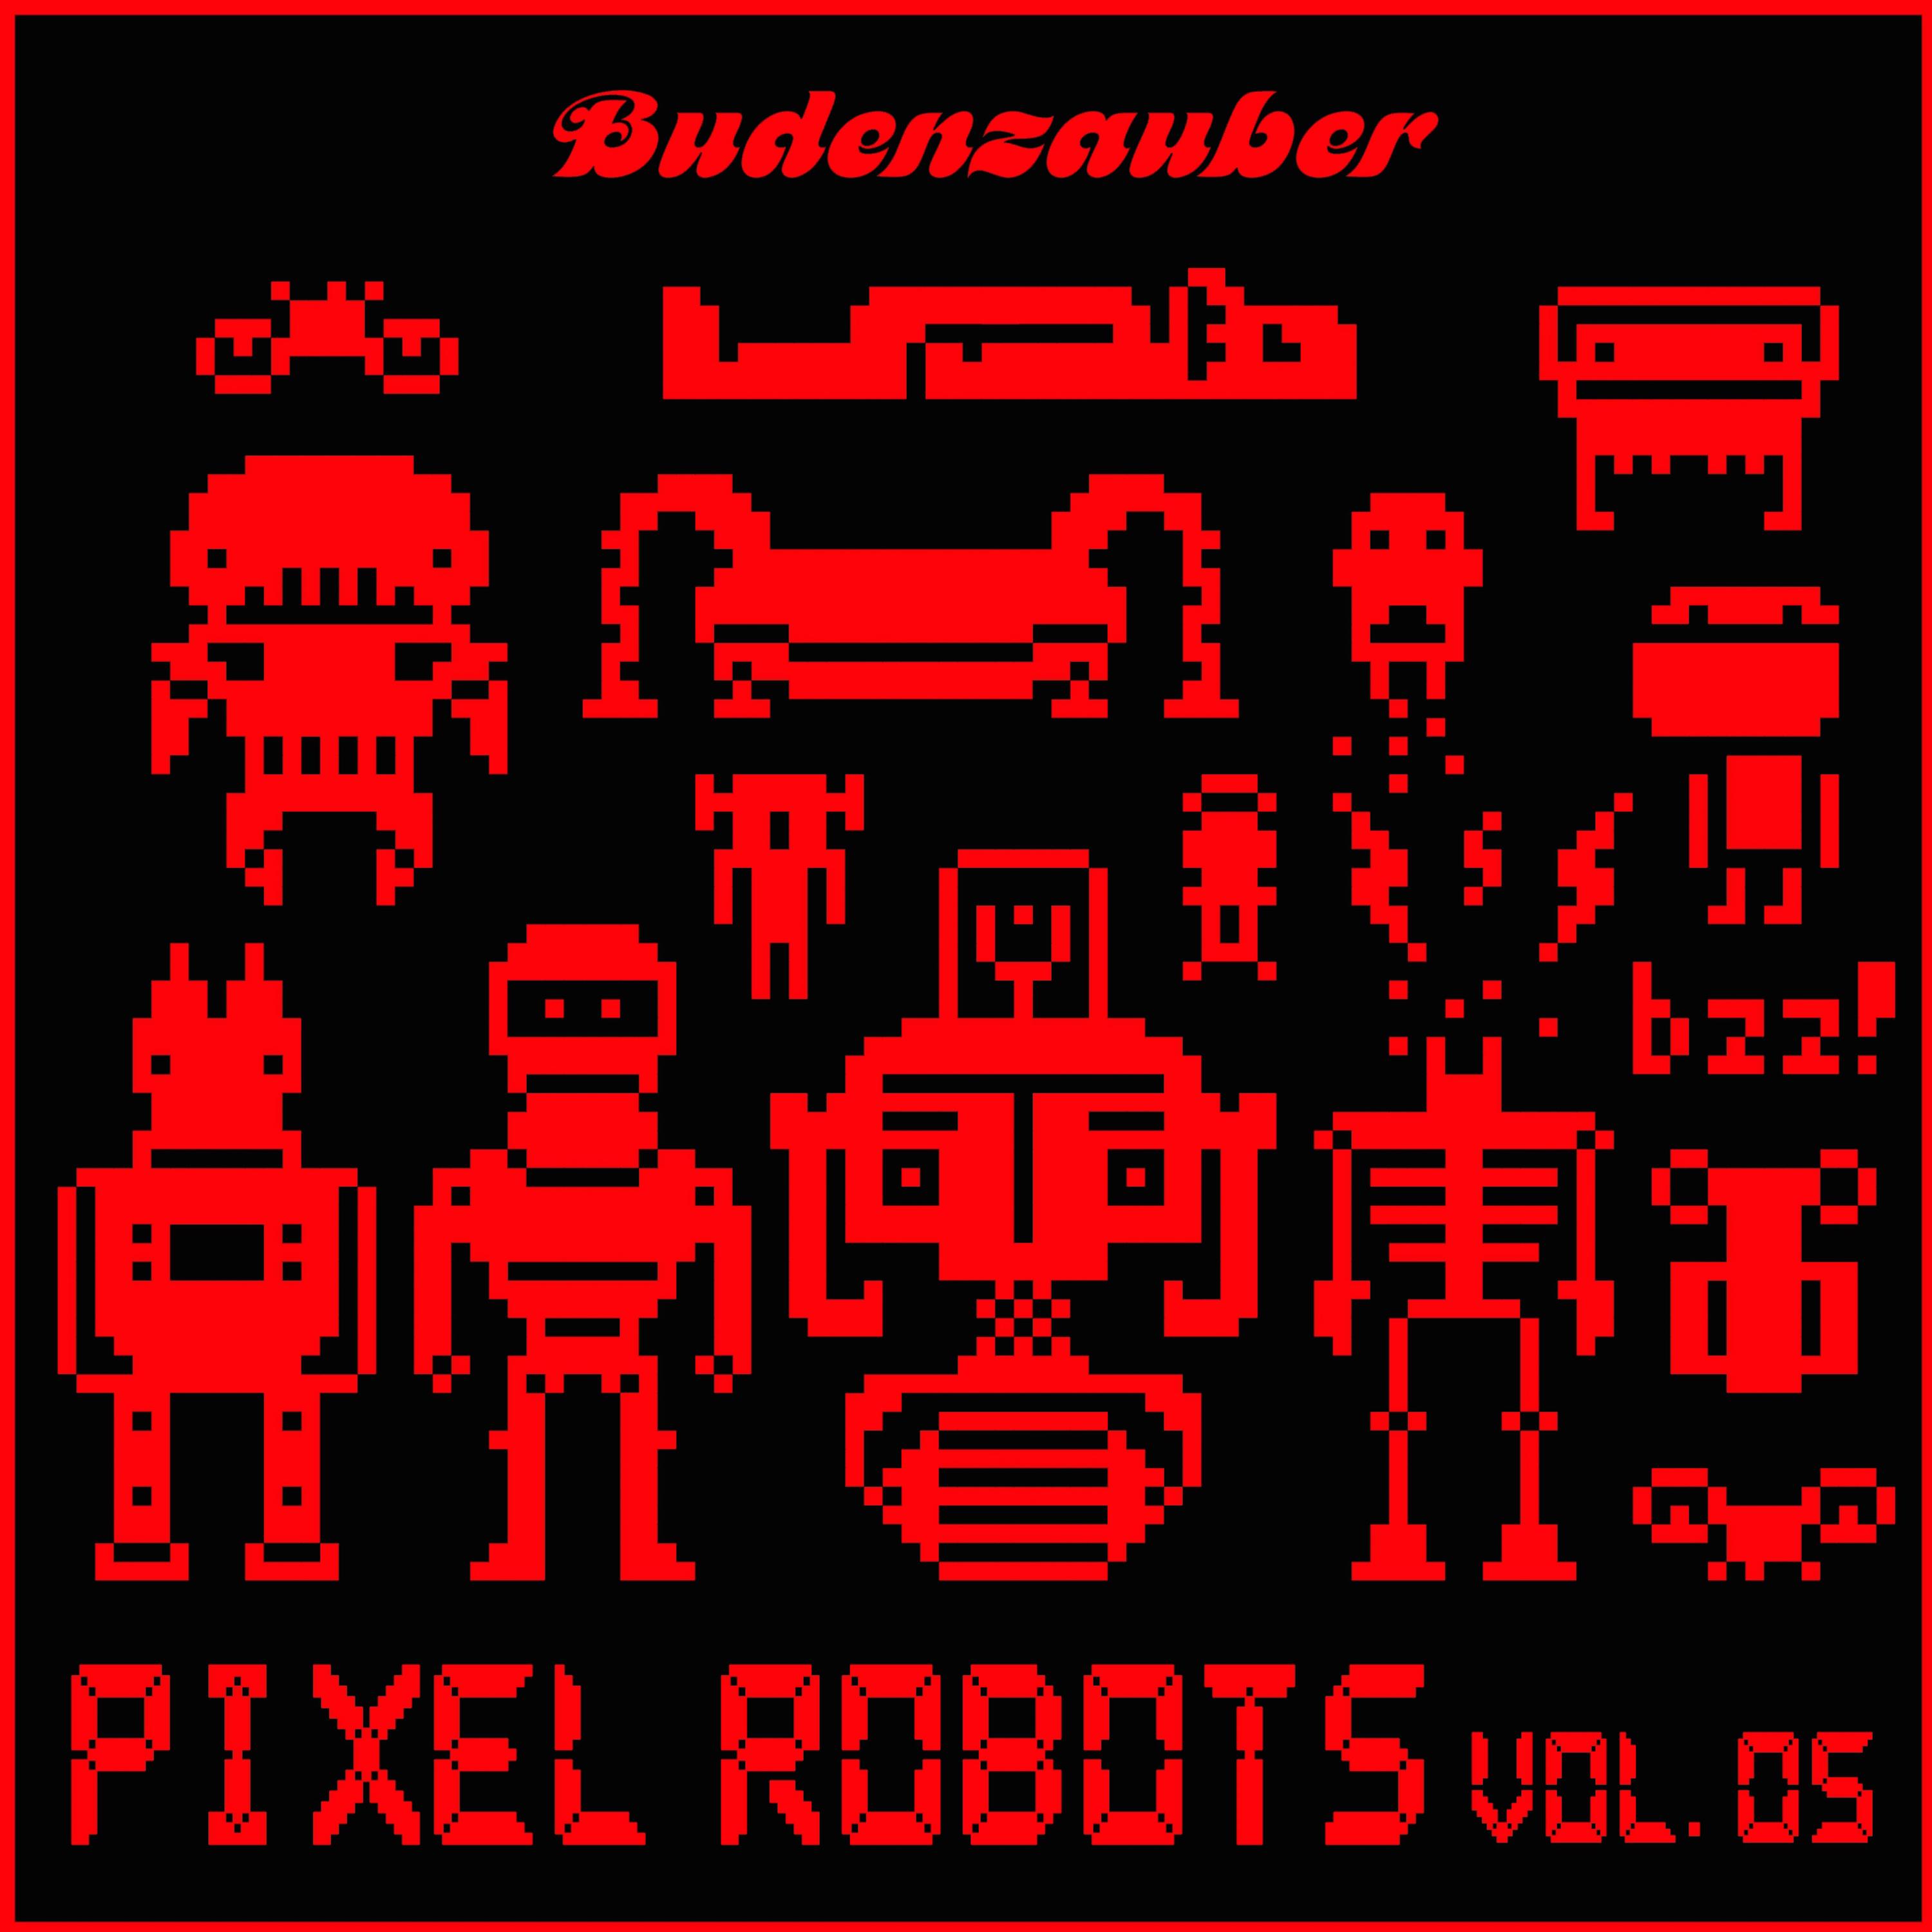 Pixel Robots, Vol. 5